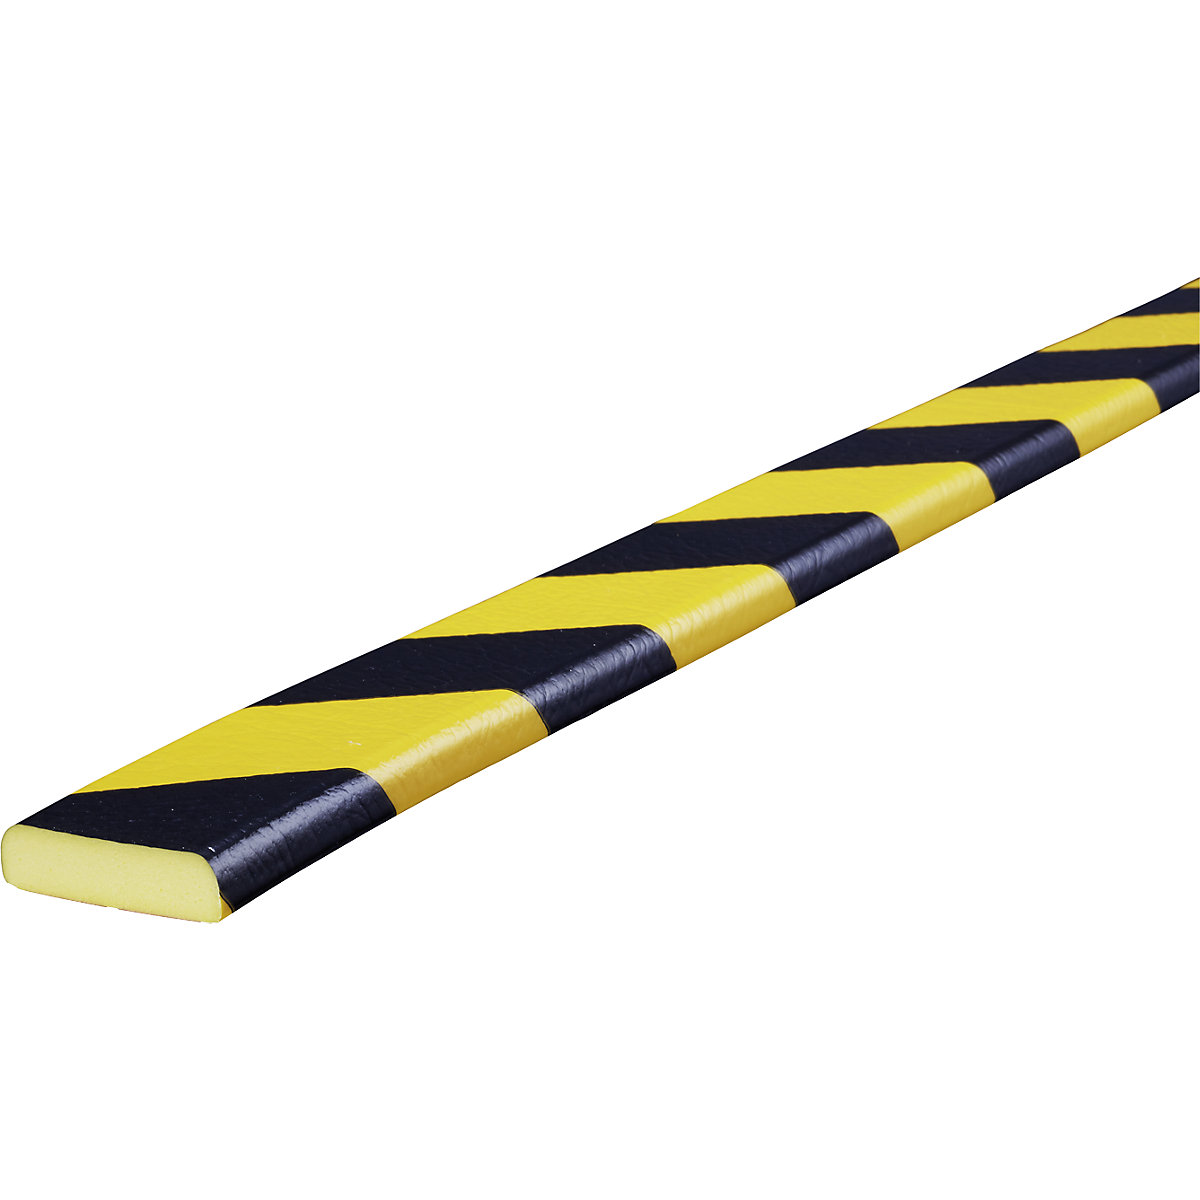 Knuffi® felületvédő – SHG, F típus, 1 db 5 m-es tekercs, fekete / sárga-22